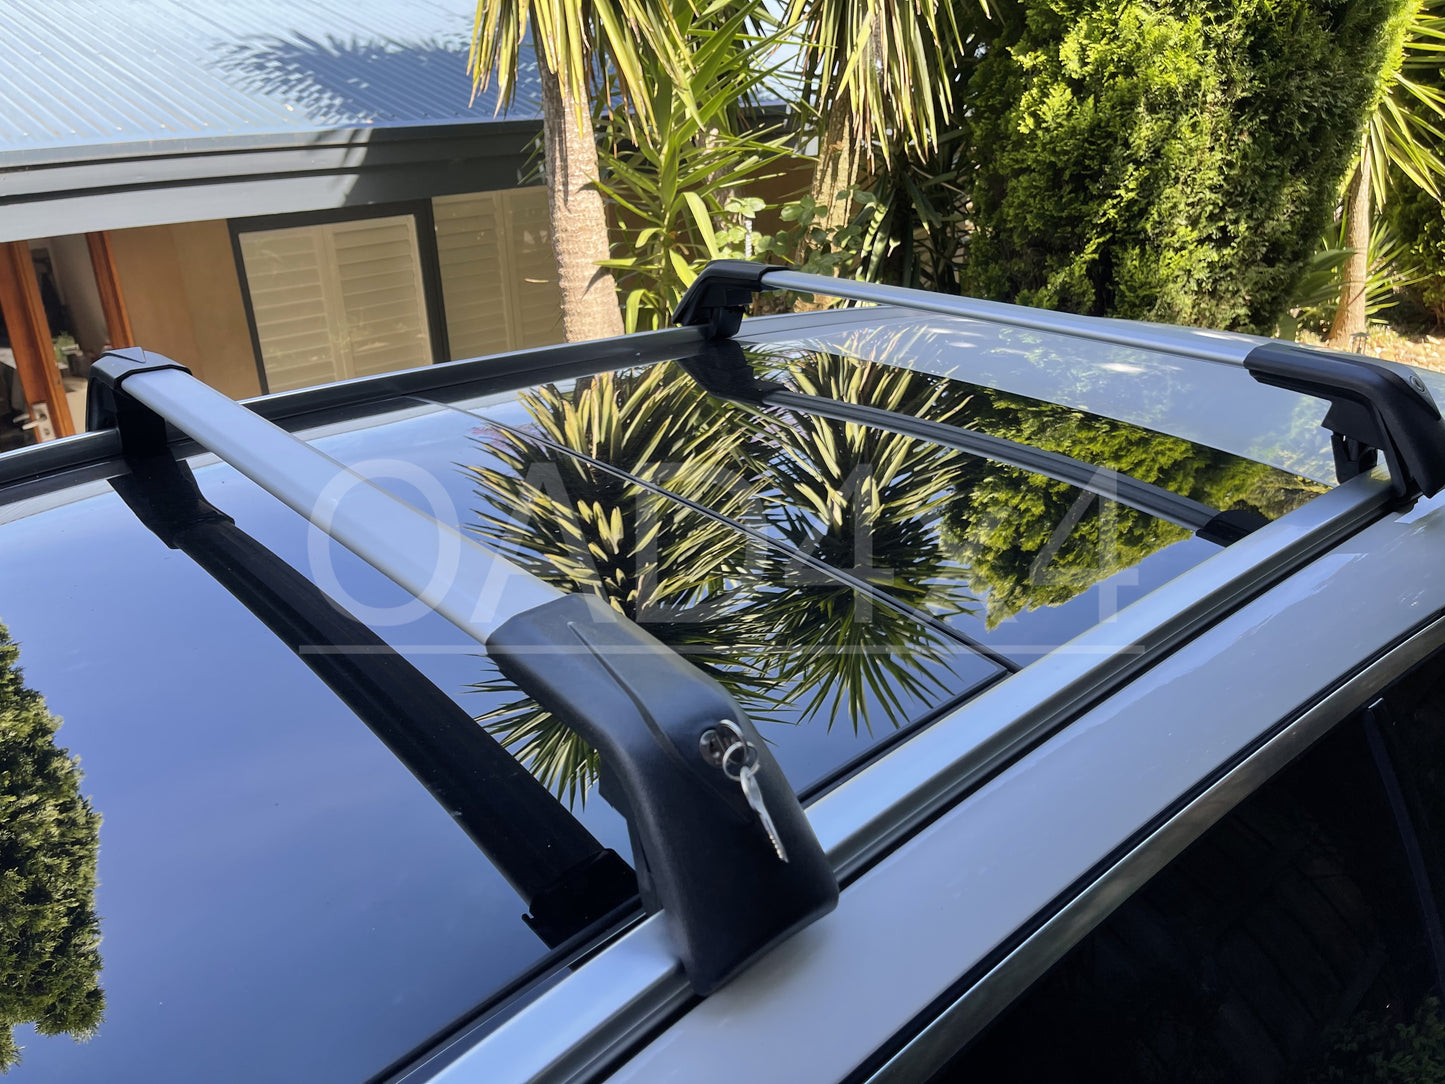 1 Pair Aluminum Silver Cross Bar Roof Racks Baggage Holder for Peugeot 3008 2017+ Clamp in Flush Rail